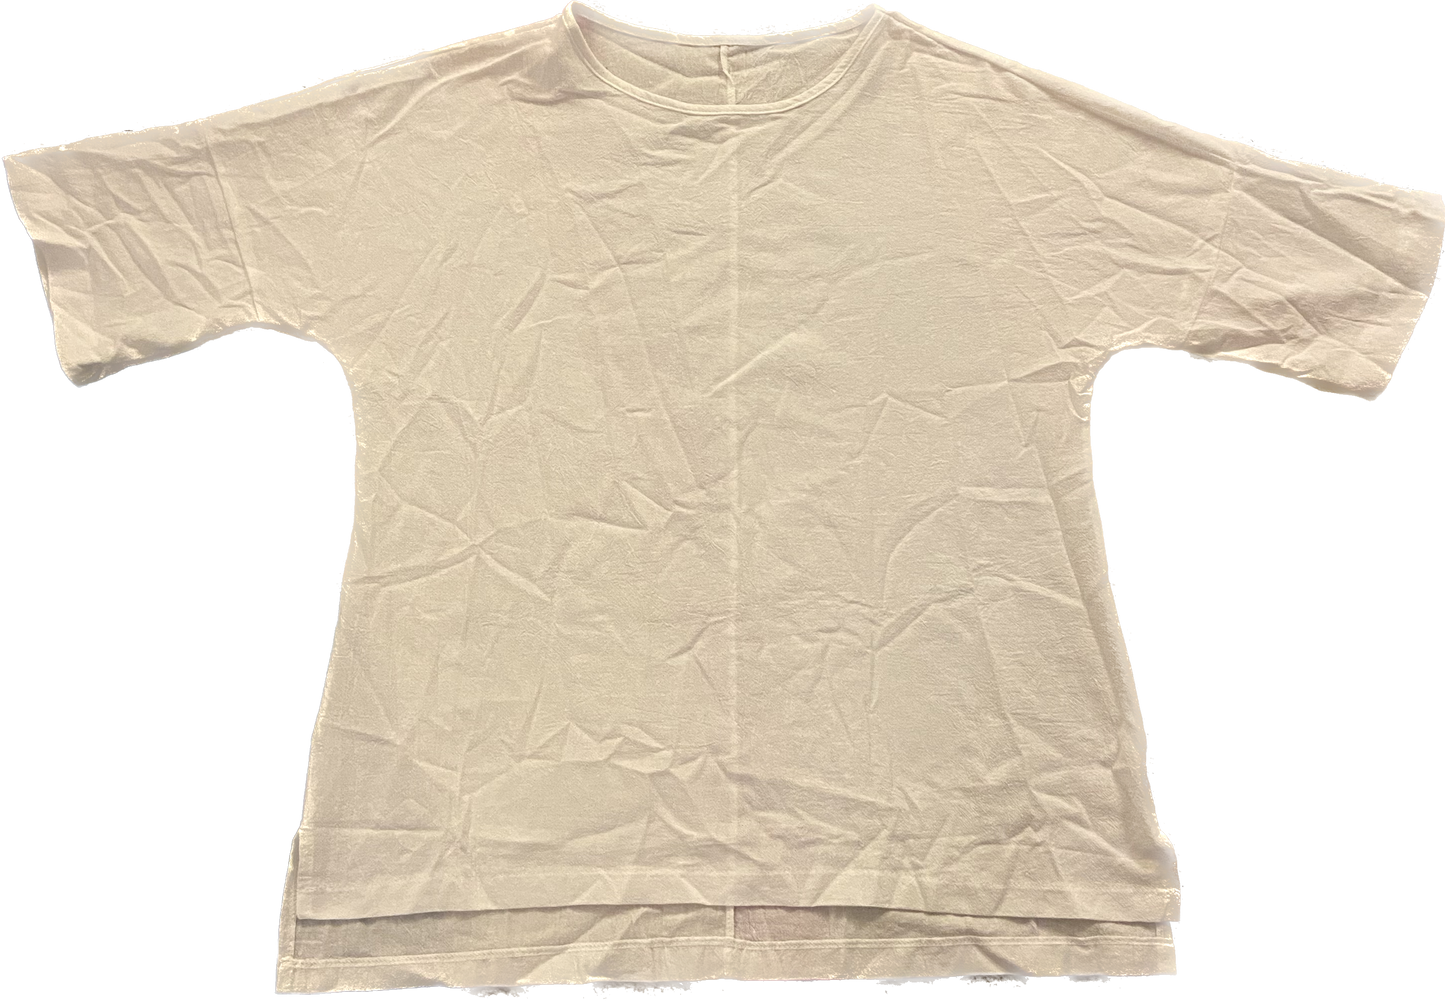 White Loose  Oversized Crop
Tee Shirt